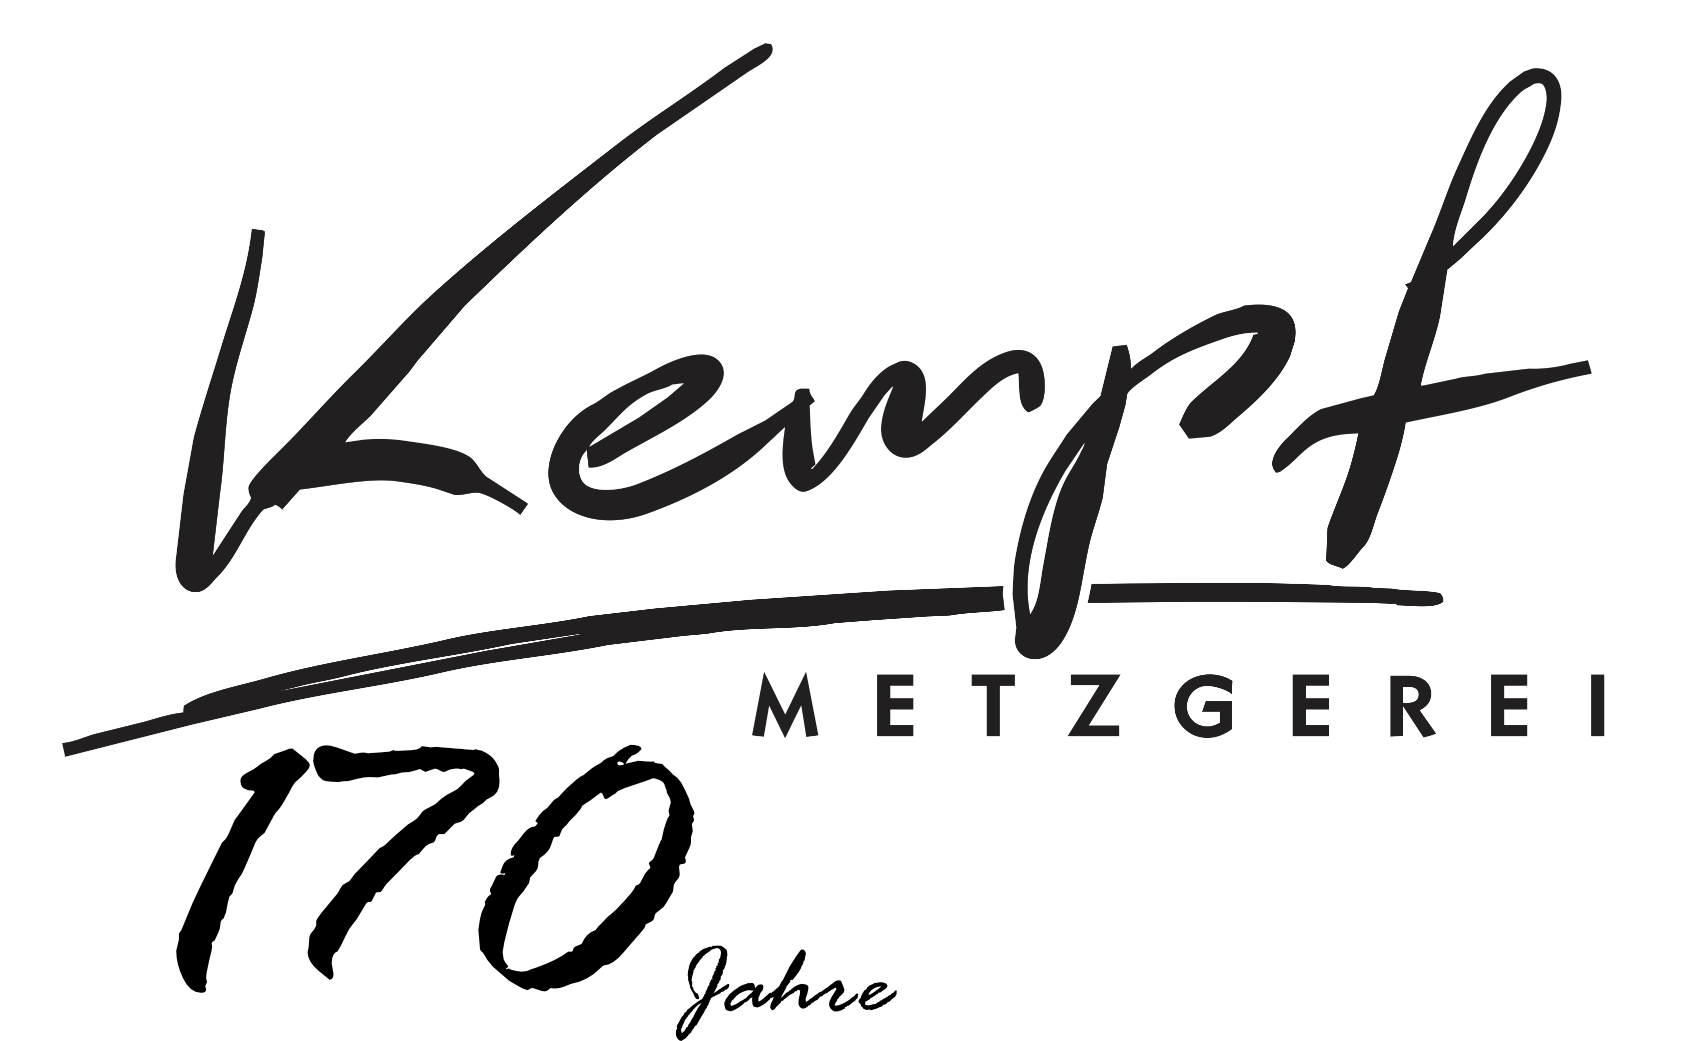 170 Jahre Metzgerei Kempf in Viernheim